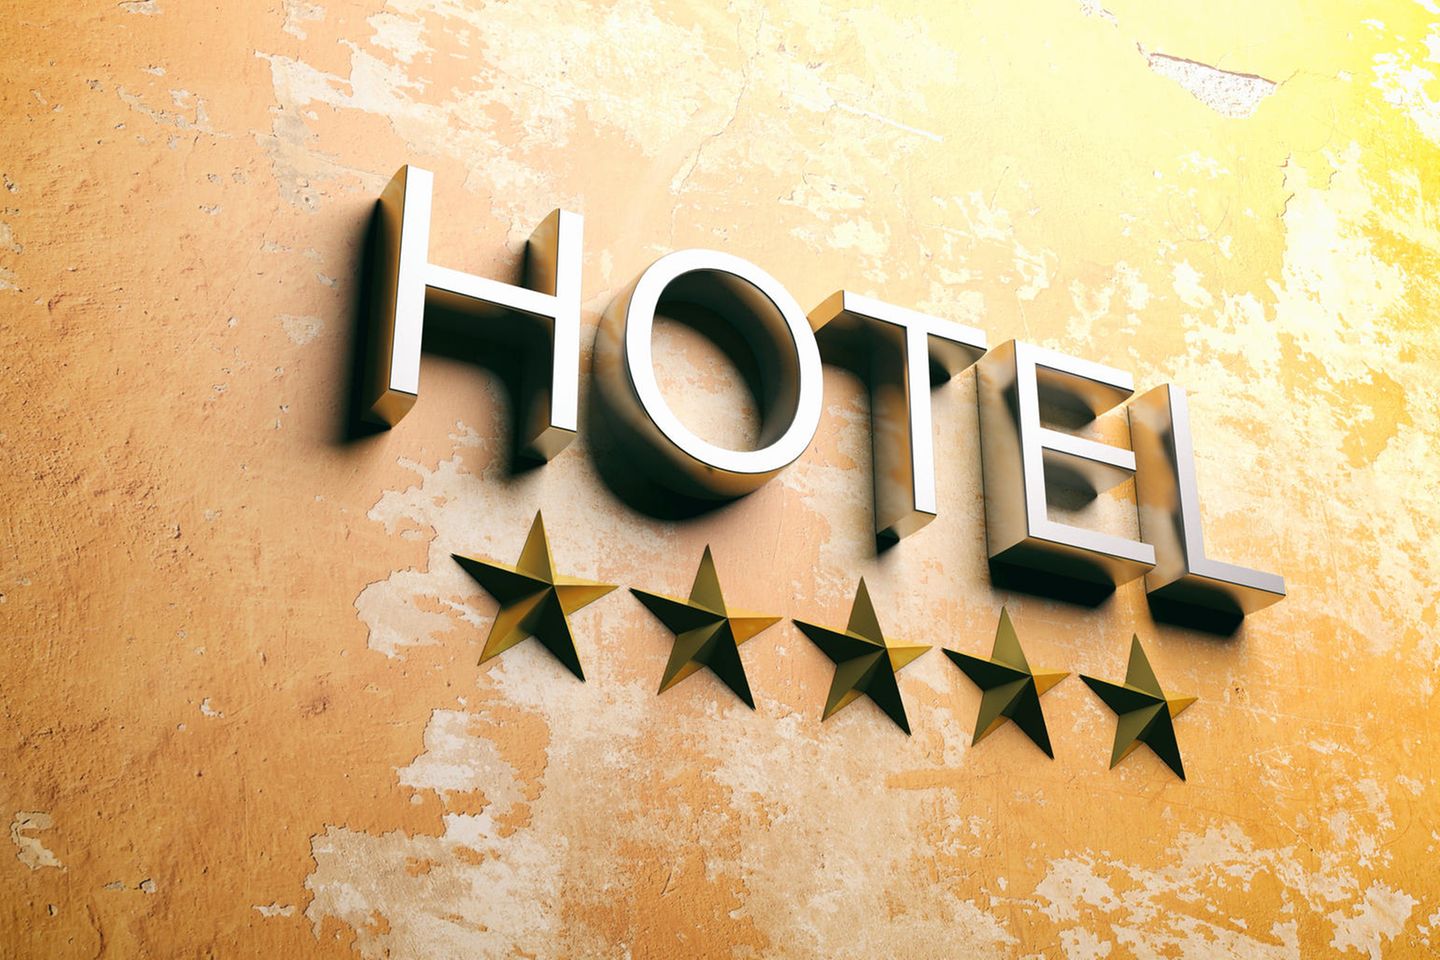 Hotelschrift samt fünf Sternen auf einer mediterran anmutenden Wand